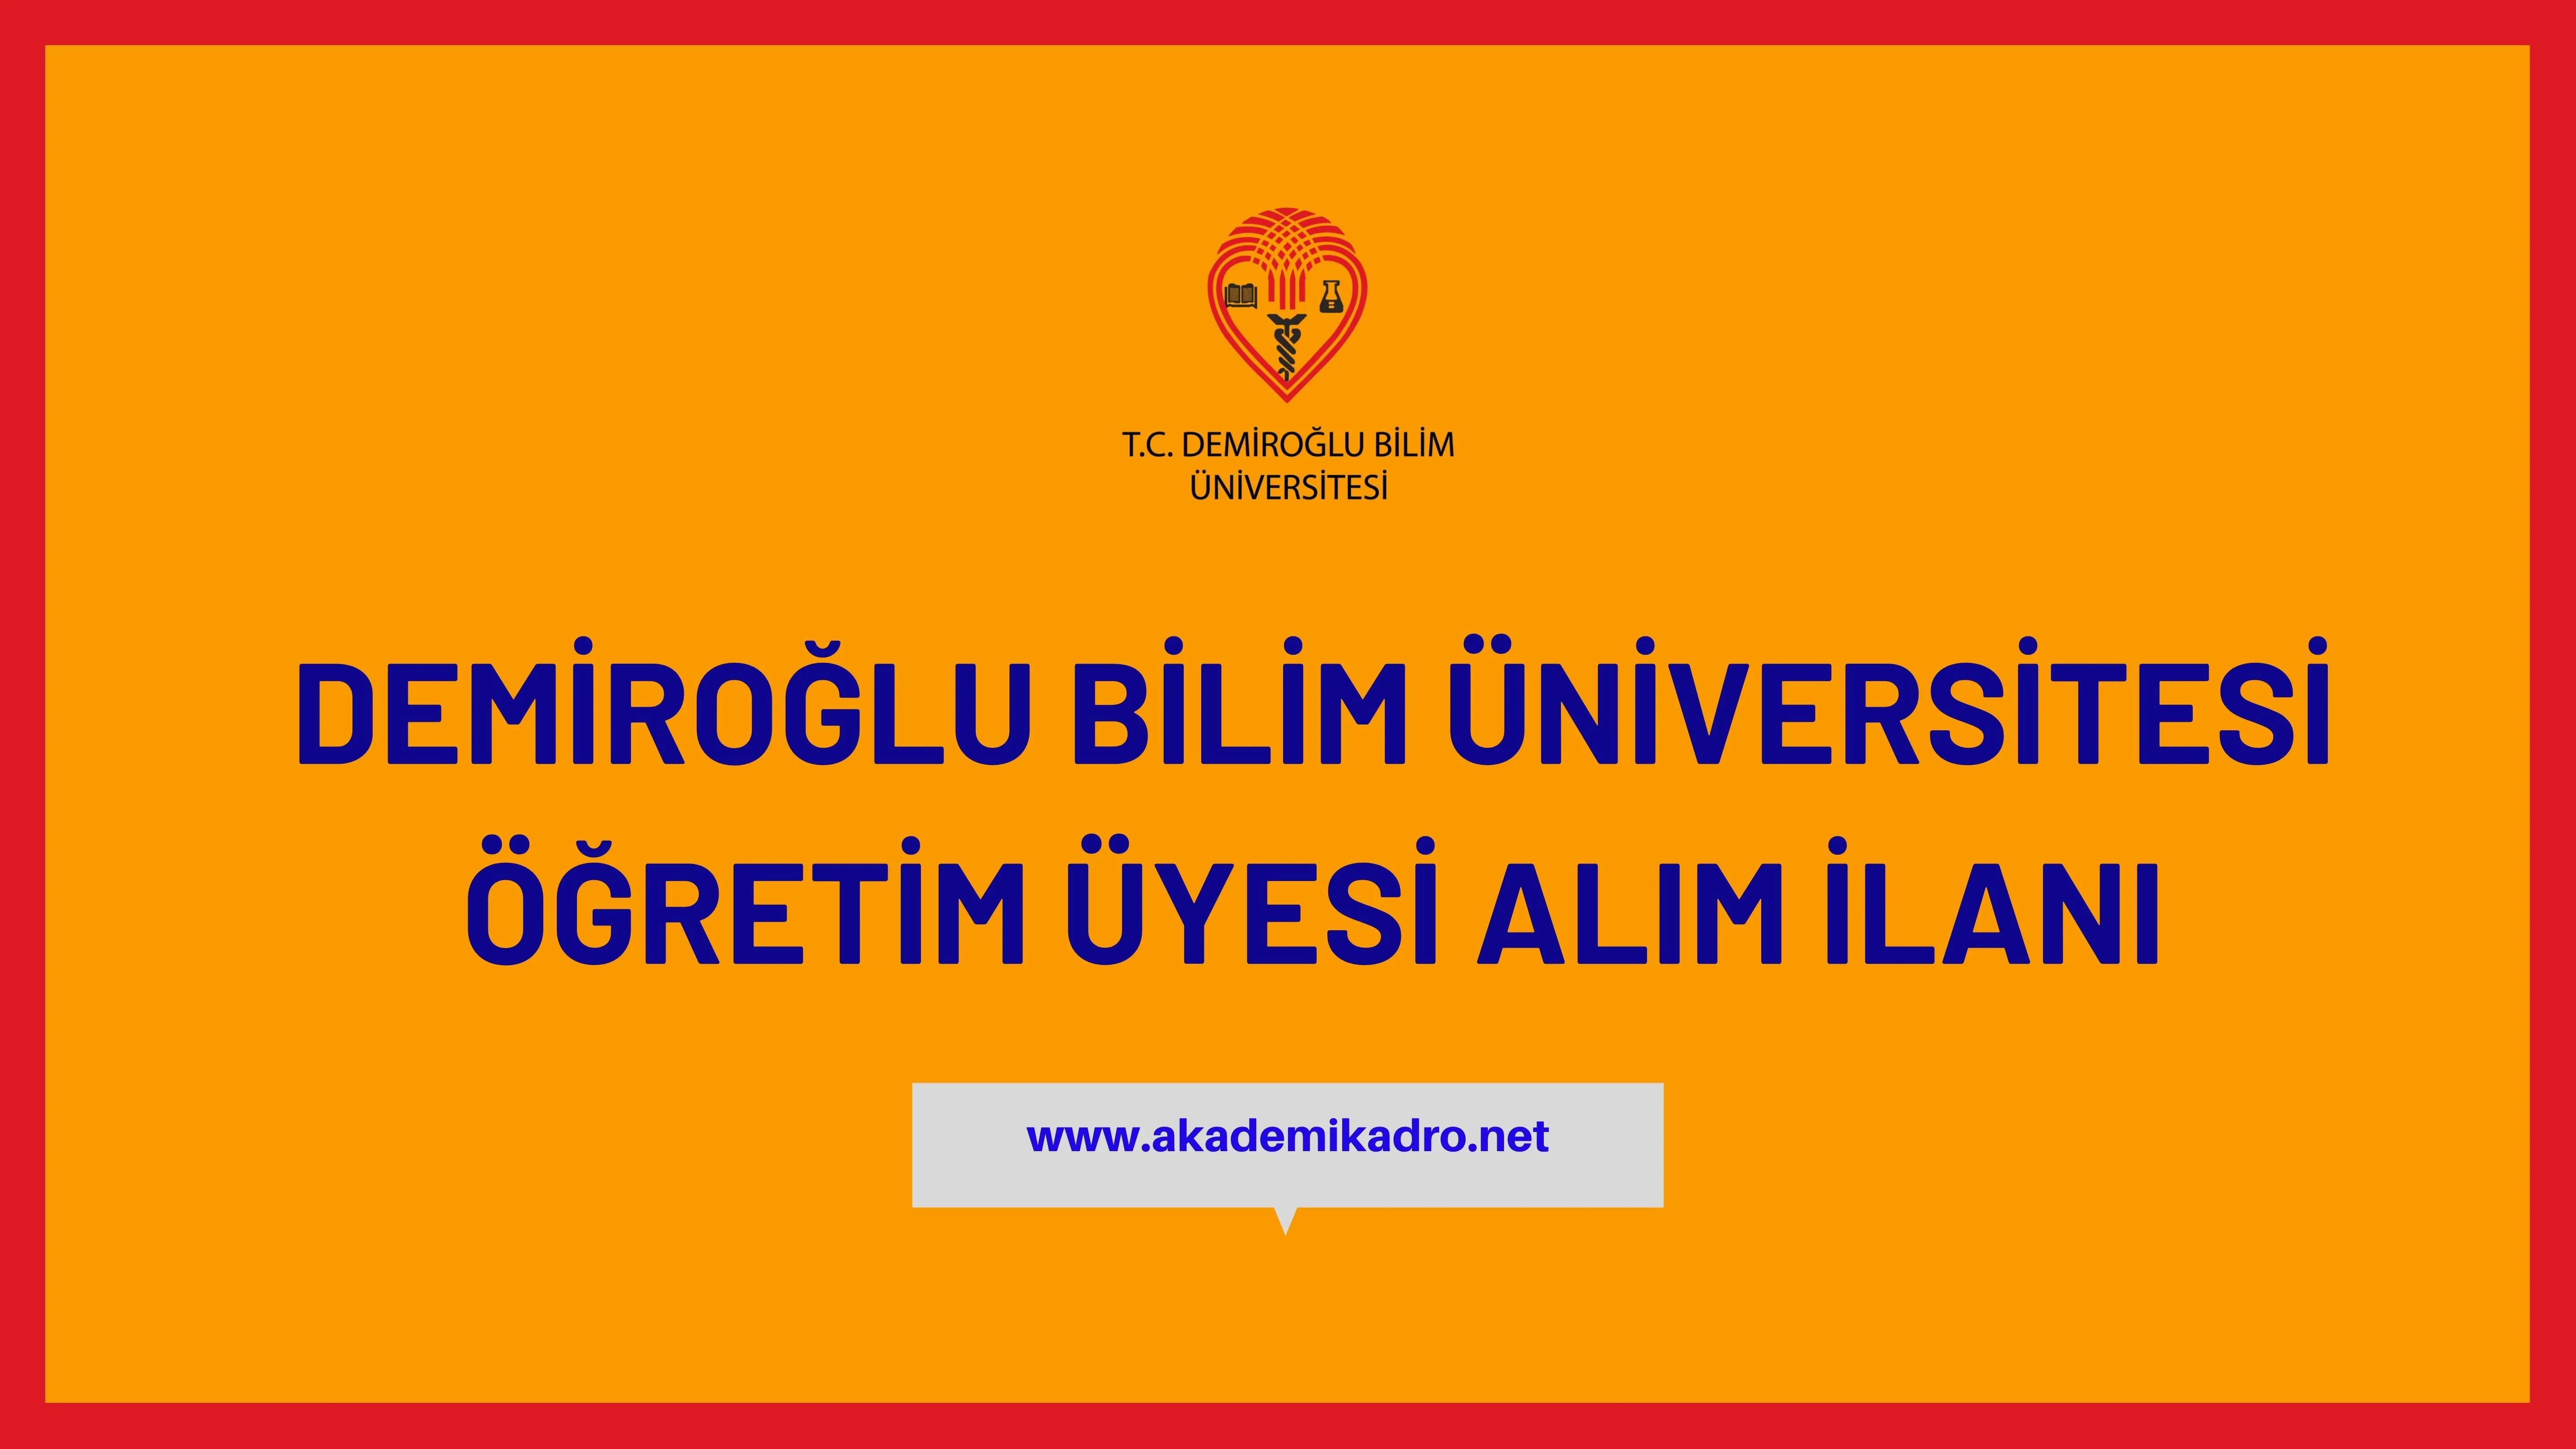 Demiroğlu Bilim Üniversitesi çeşitli branşlarda 9 Öğretim üyesi alacak. Son başvuru tarihi 19 Aralık 2022.